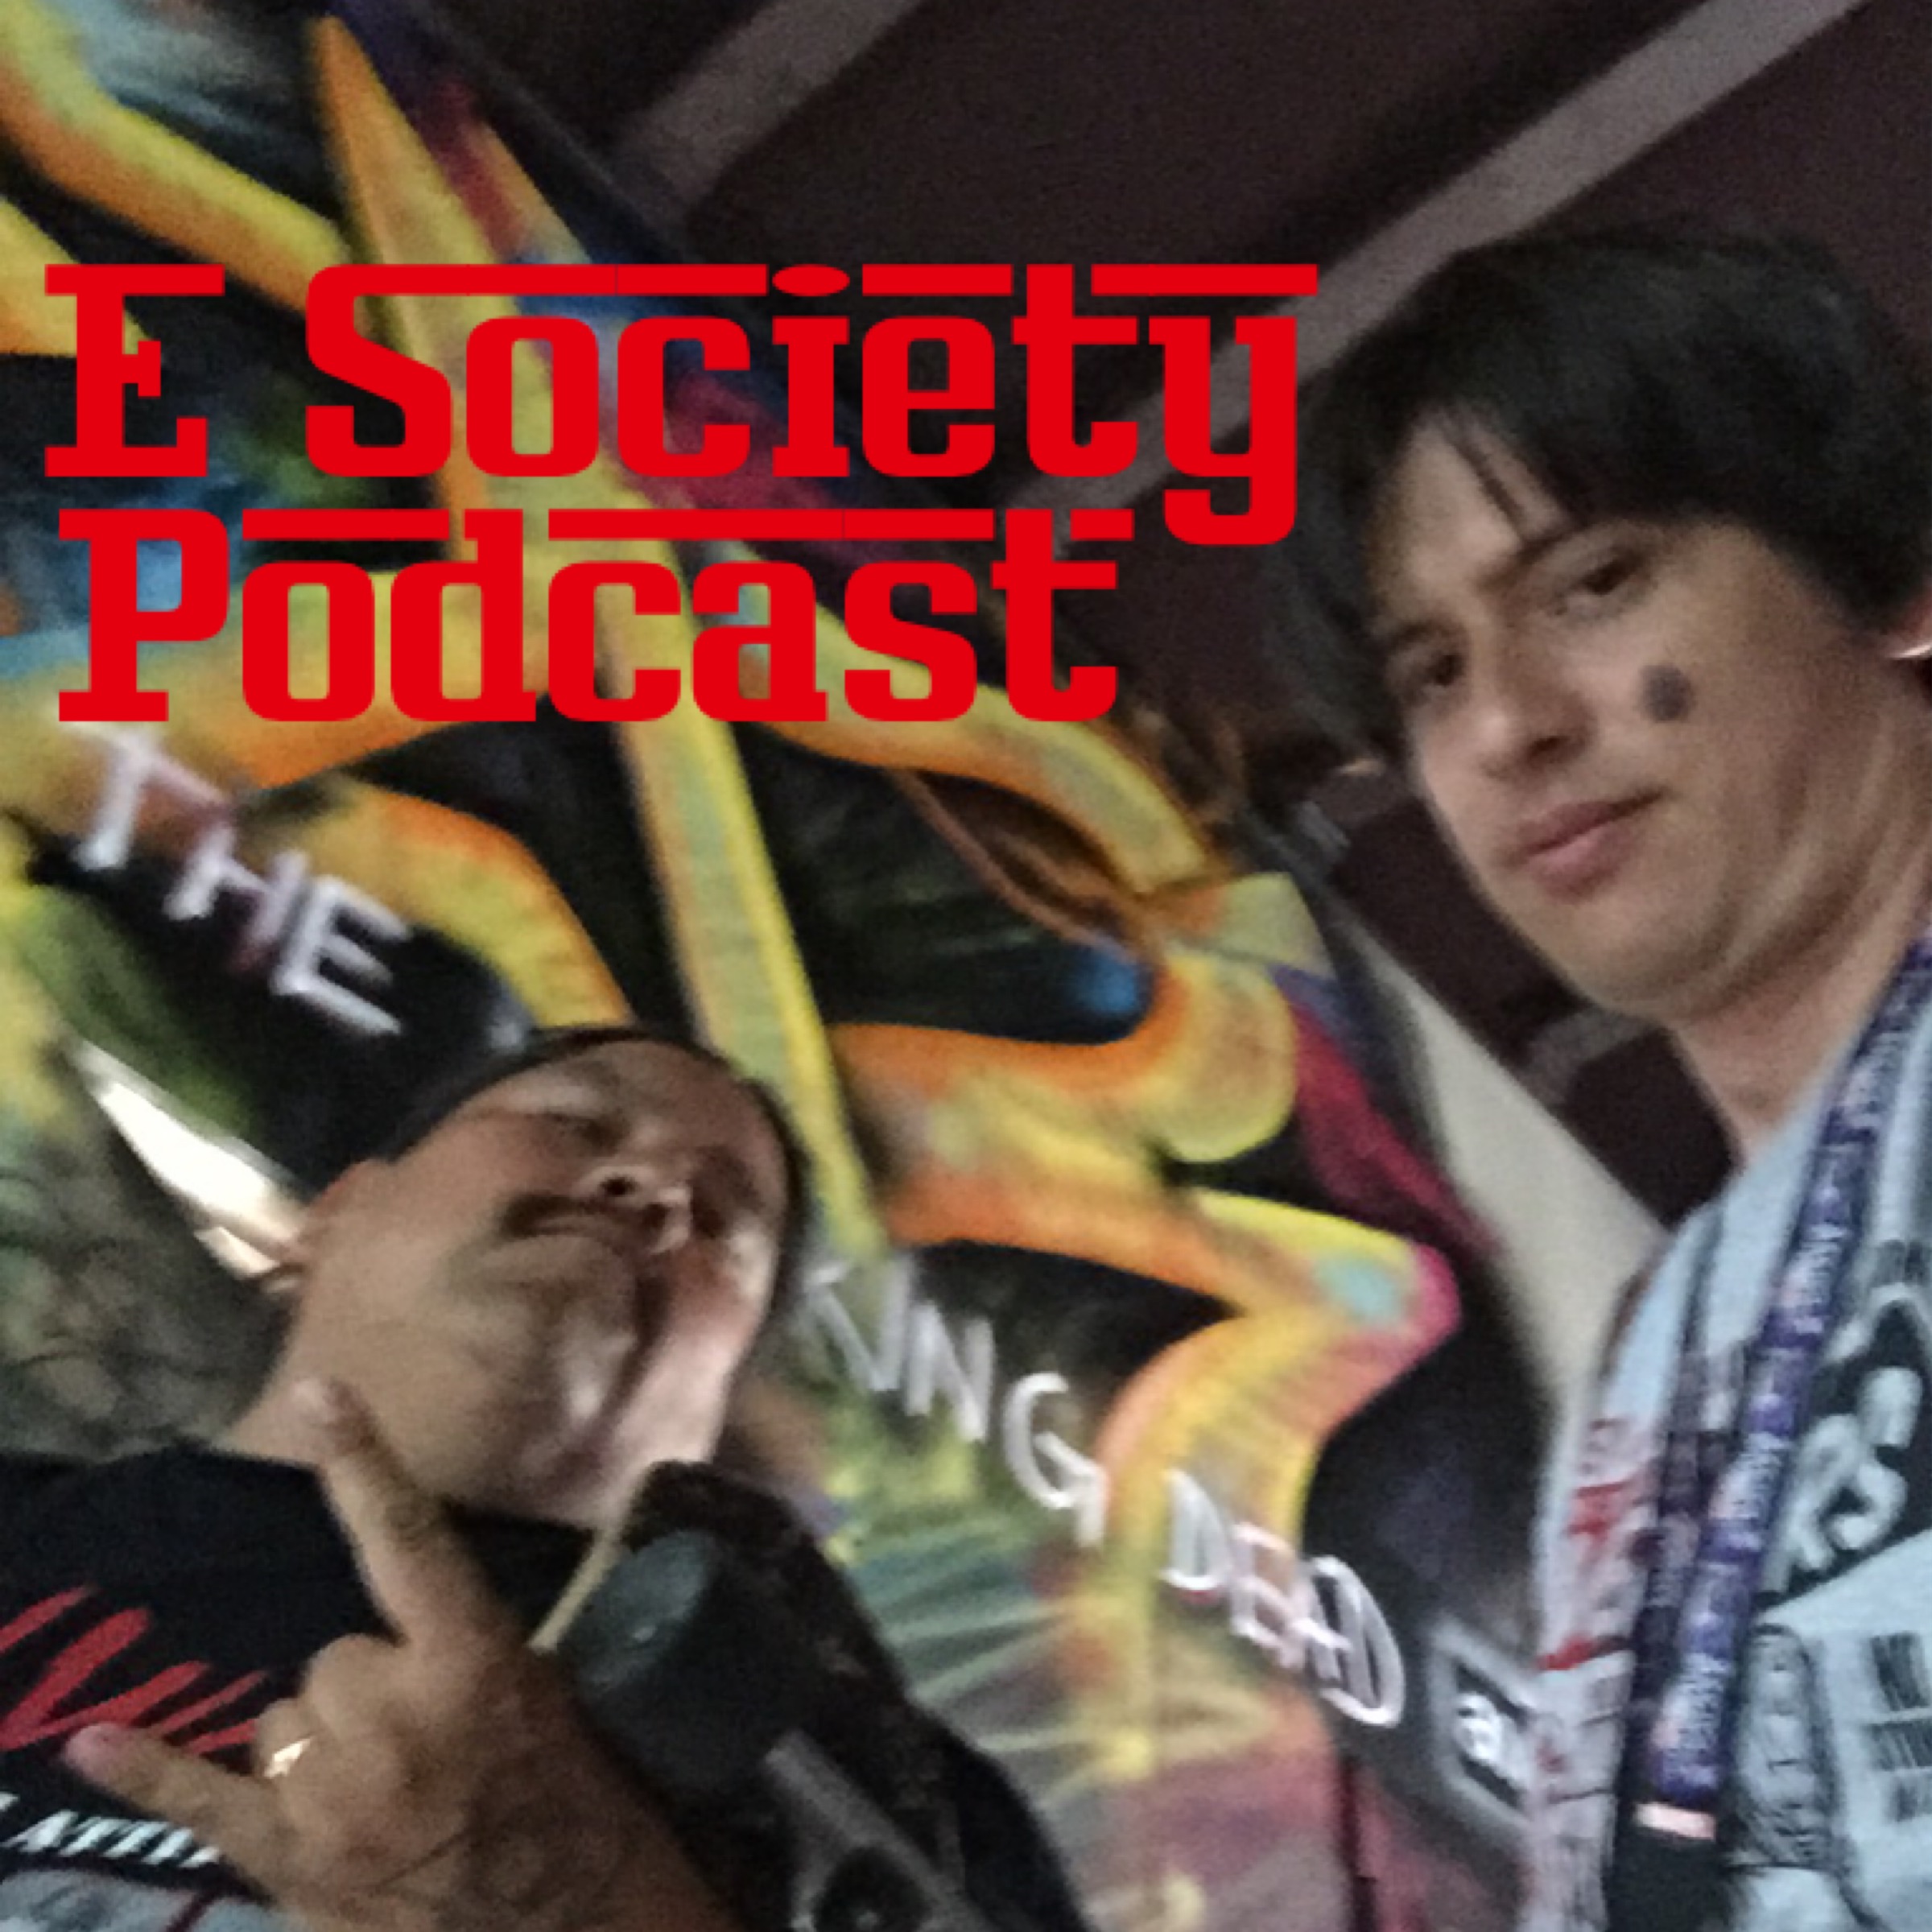 E Society Podcast - Ep. 38: Ghetto style